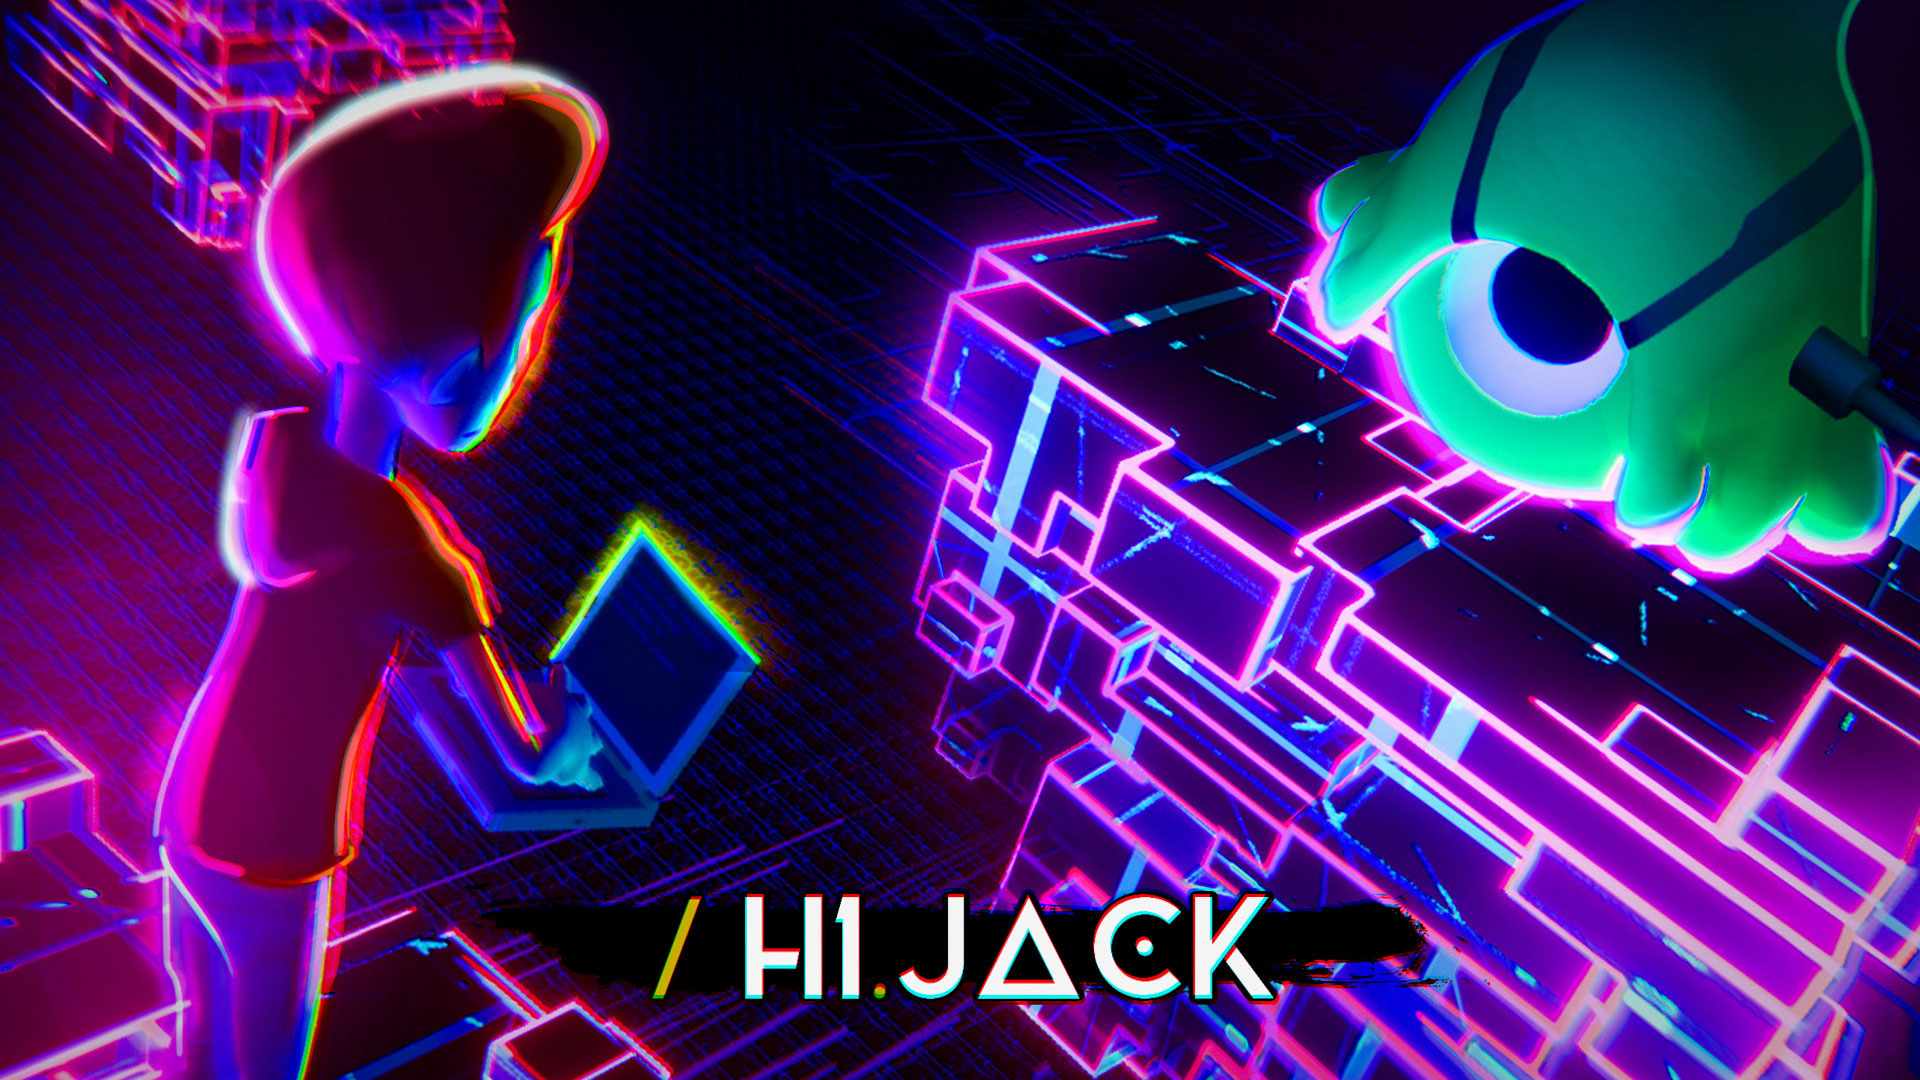 H1.Jack